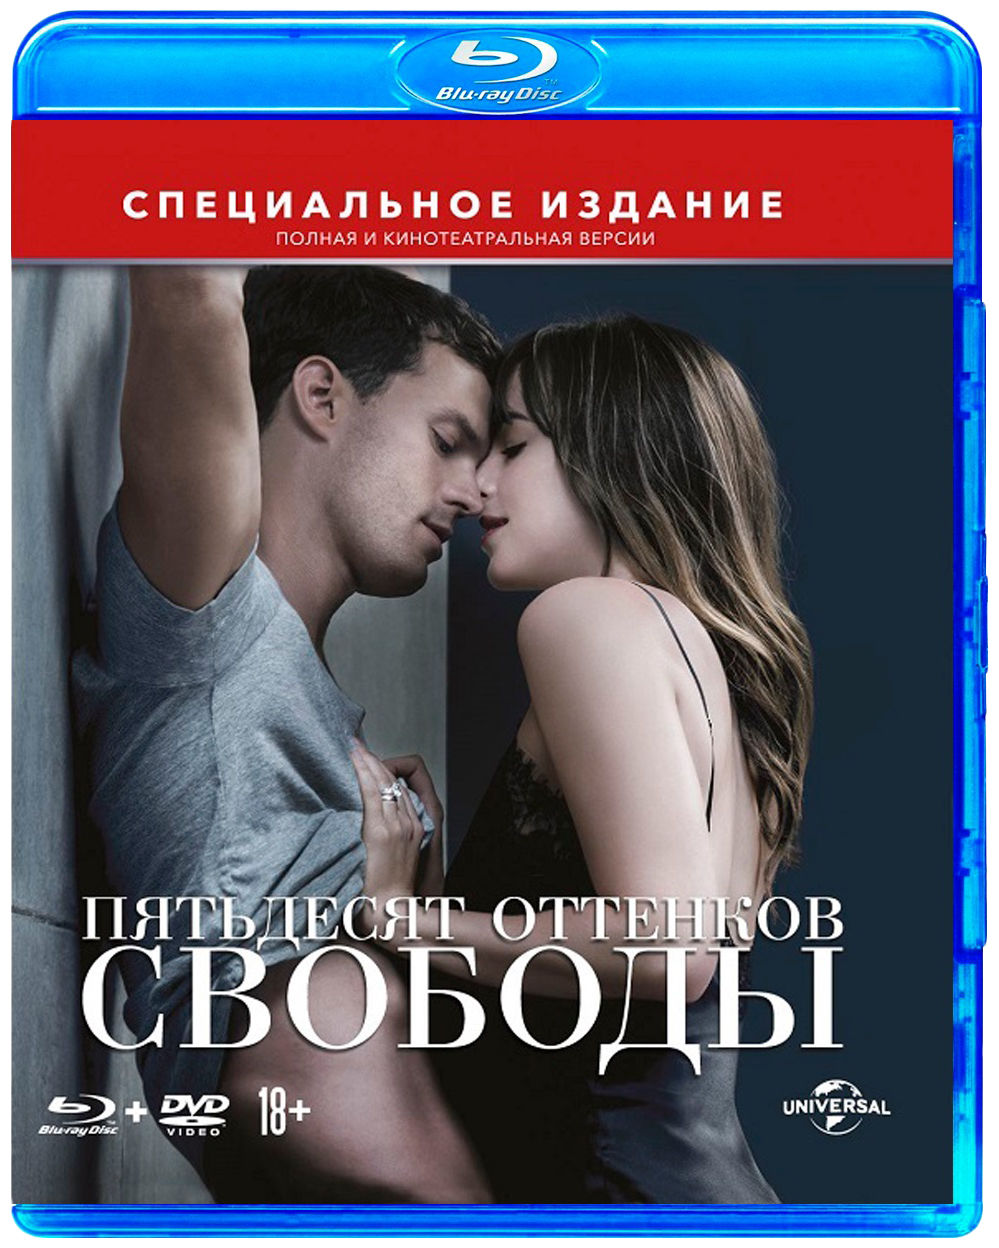 DVD Пятьдесят оттенков свободы (Полная и кинотеатральная версии), купить в  Москве, цены в интернет-магазинах на Мегамаркет